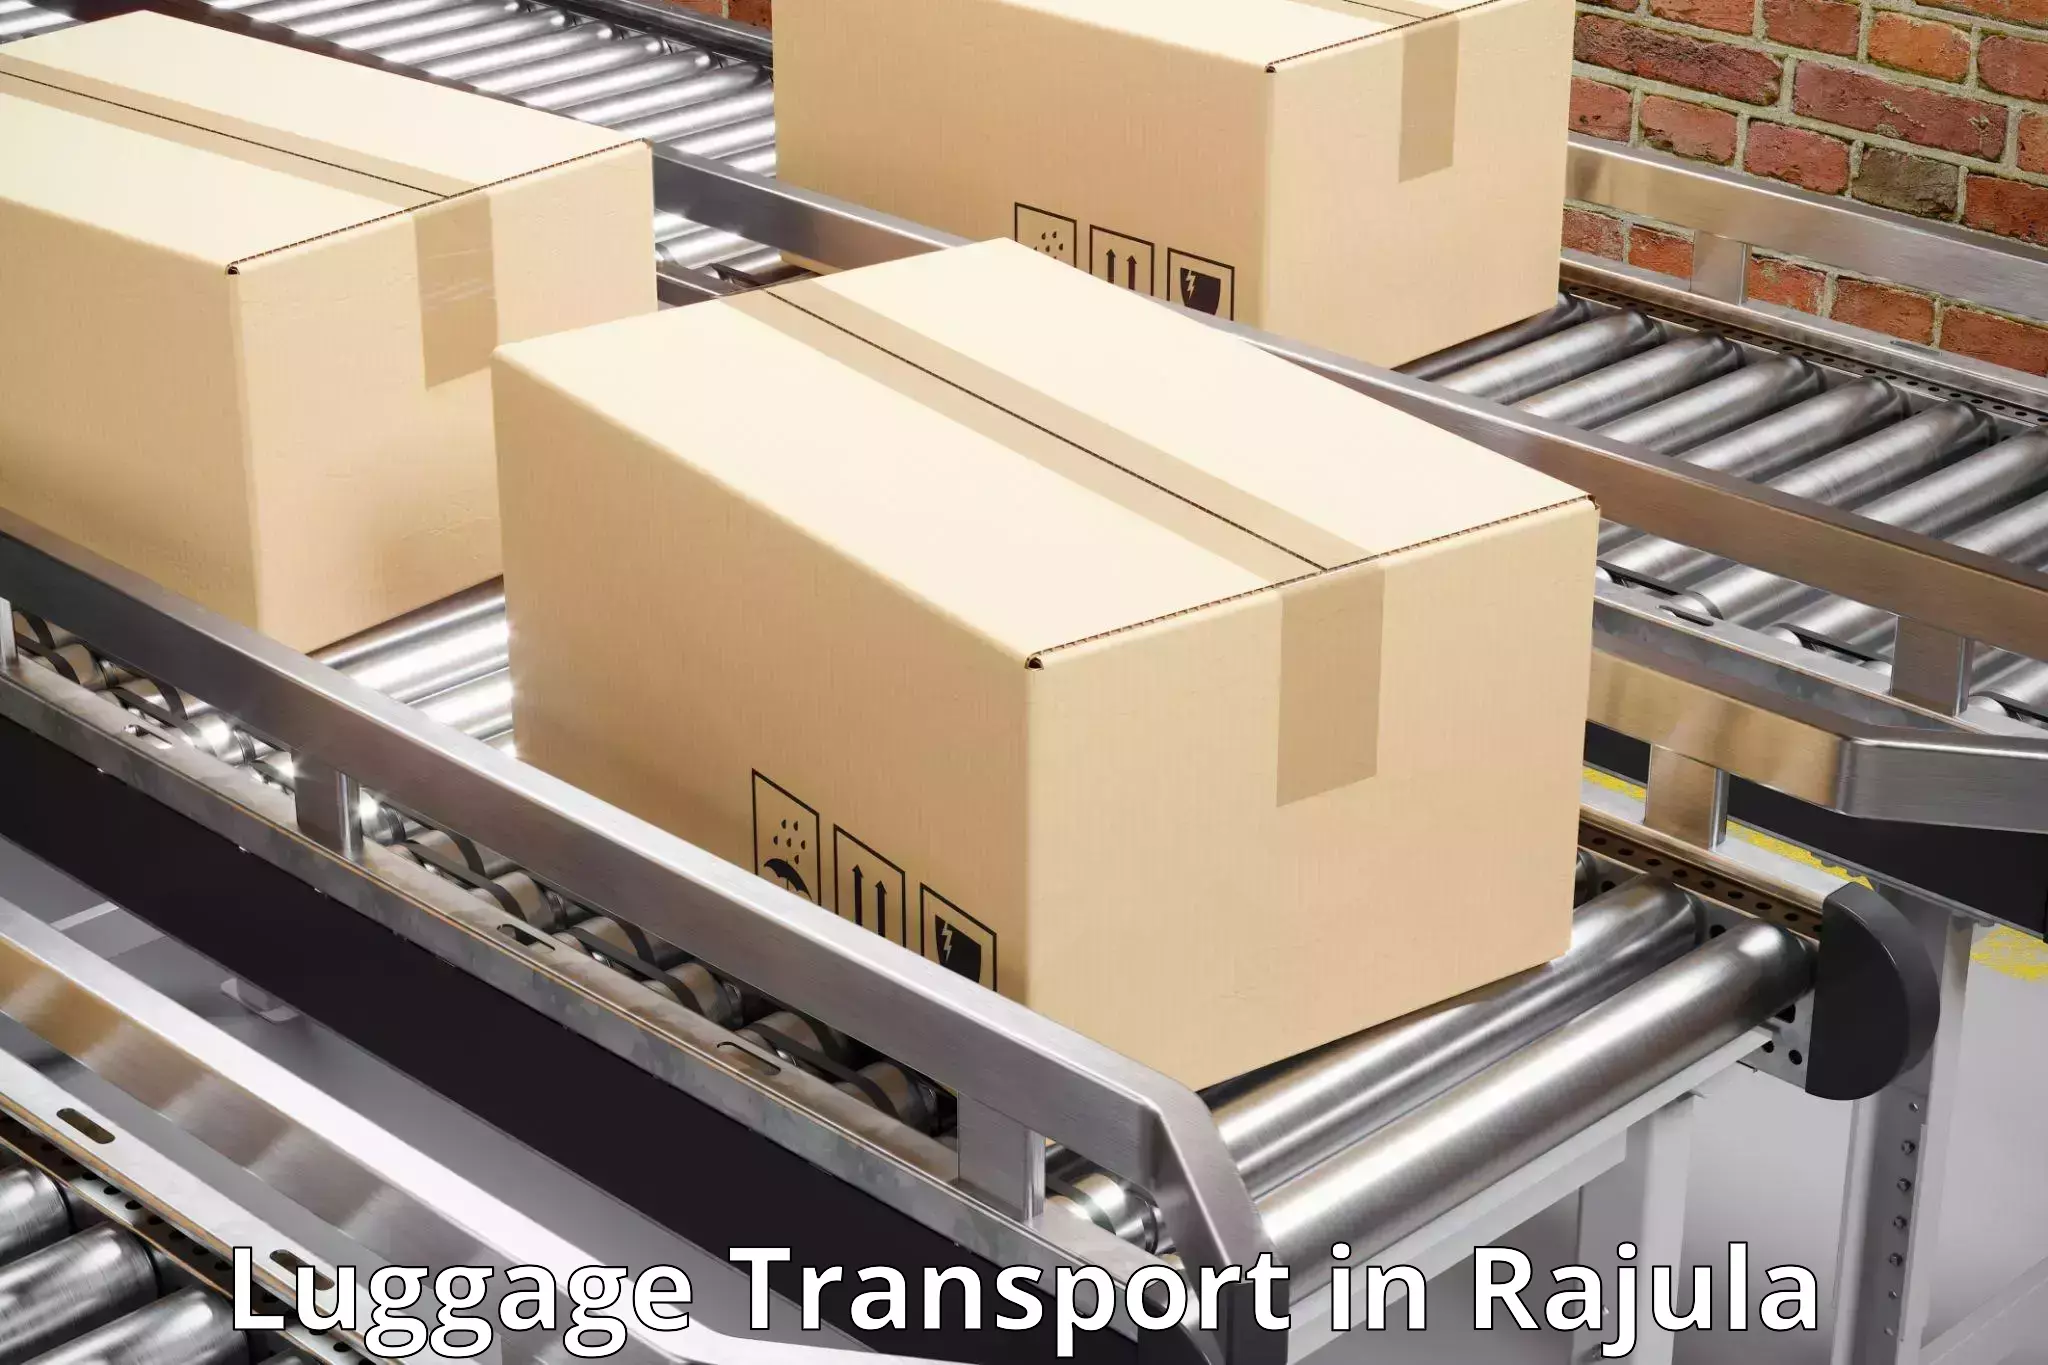 Luggage shipment processing in Rajula